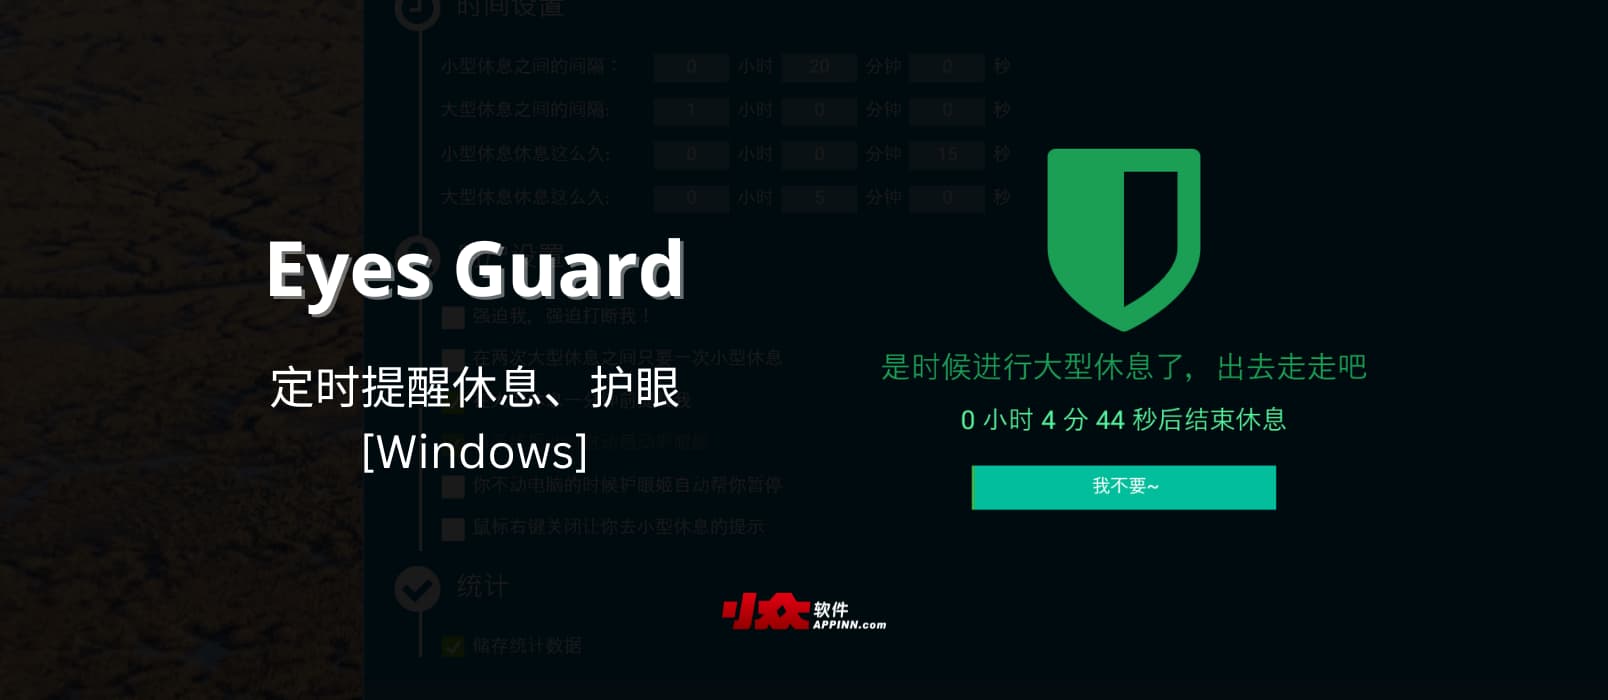 Eyes Guard – 开源定时提醒休息、护眼工具[Windows] 1